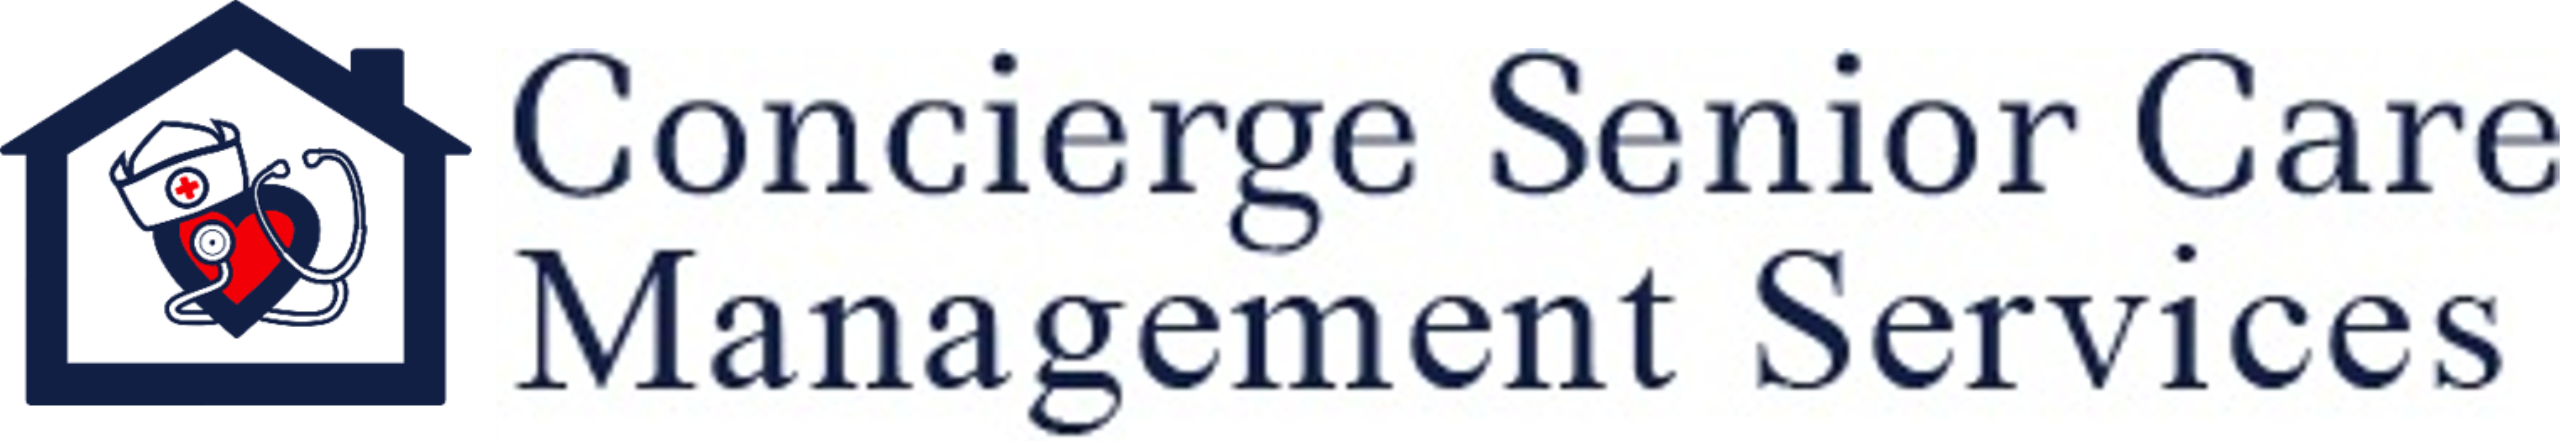 Concierge Senior Care Management Services Logo